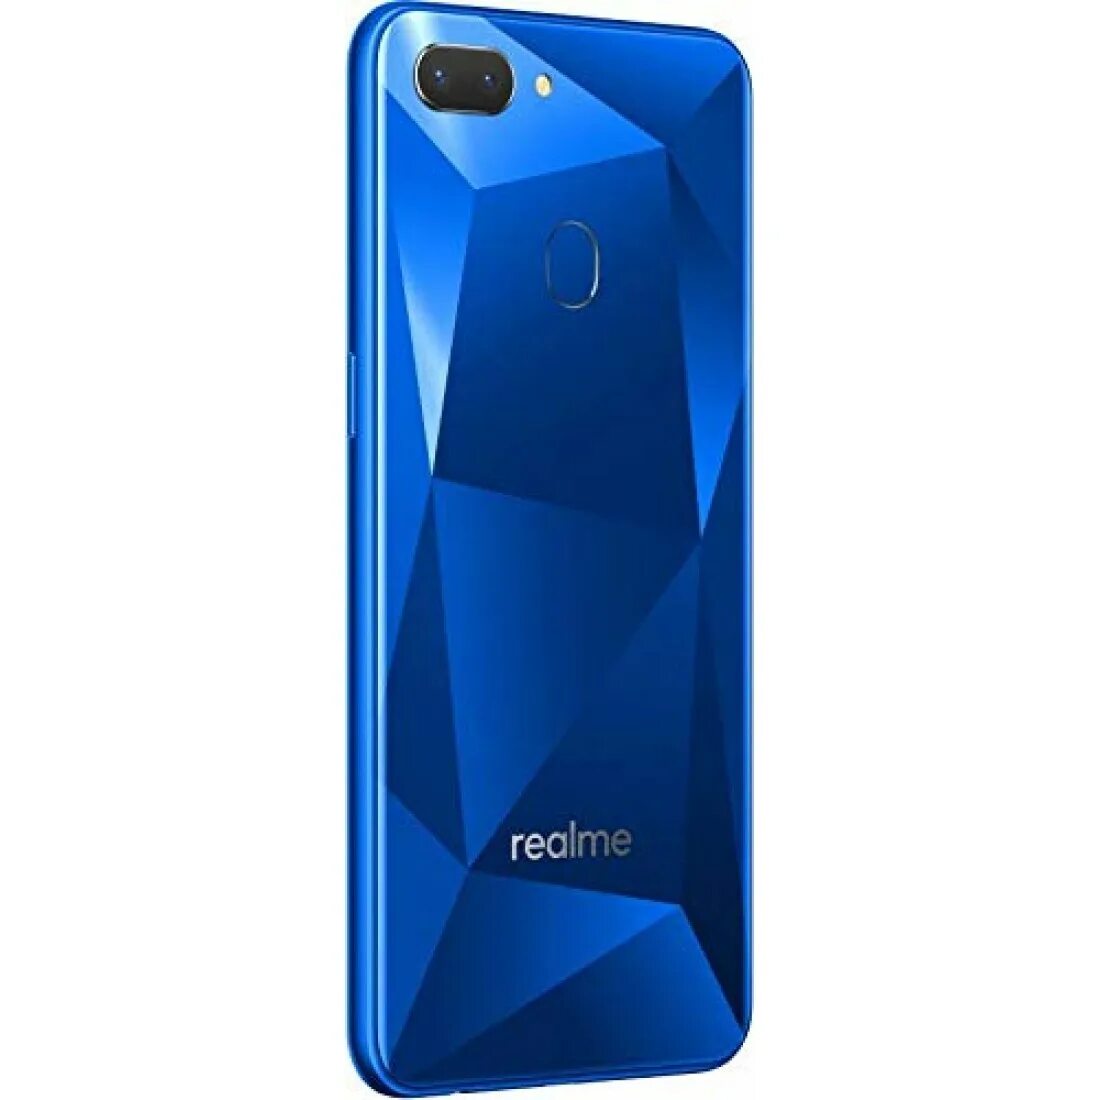 Realme купить в новосибирске. Смартфон Realme c2. Смартфон Realme c2 2/32gb. Oppo Realme c2. Смартфон Realme c21 3/32gb Blue.